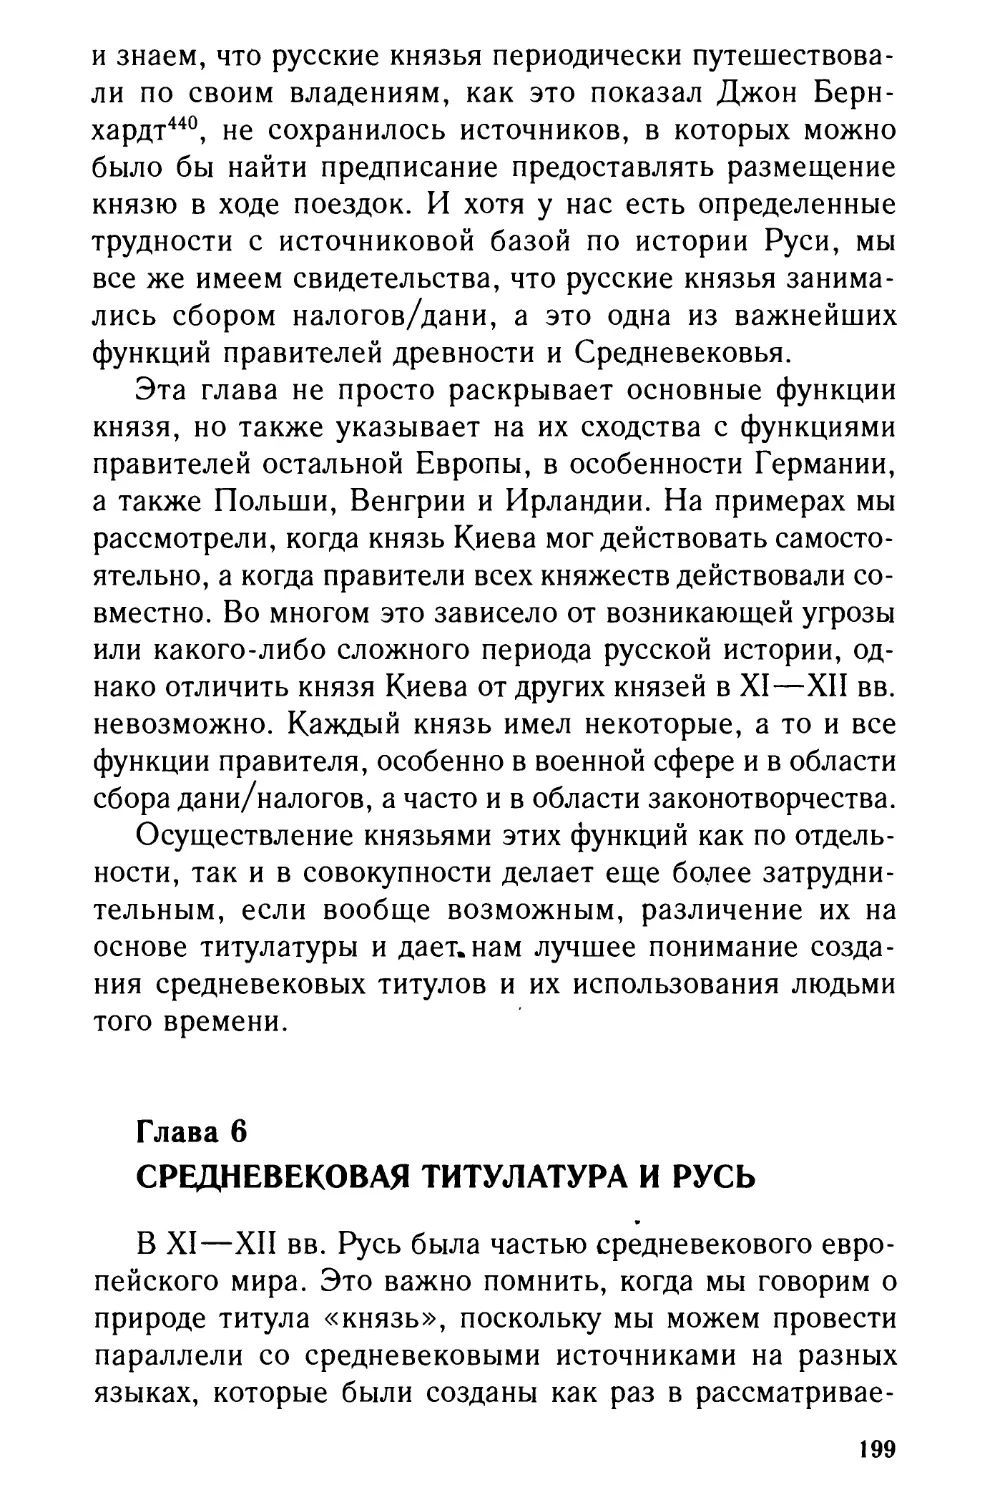 Глава 6. Средневековая титулатура и Русь